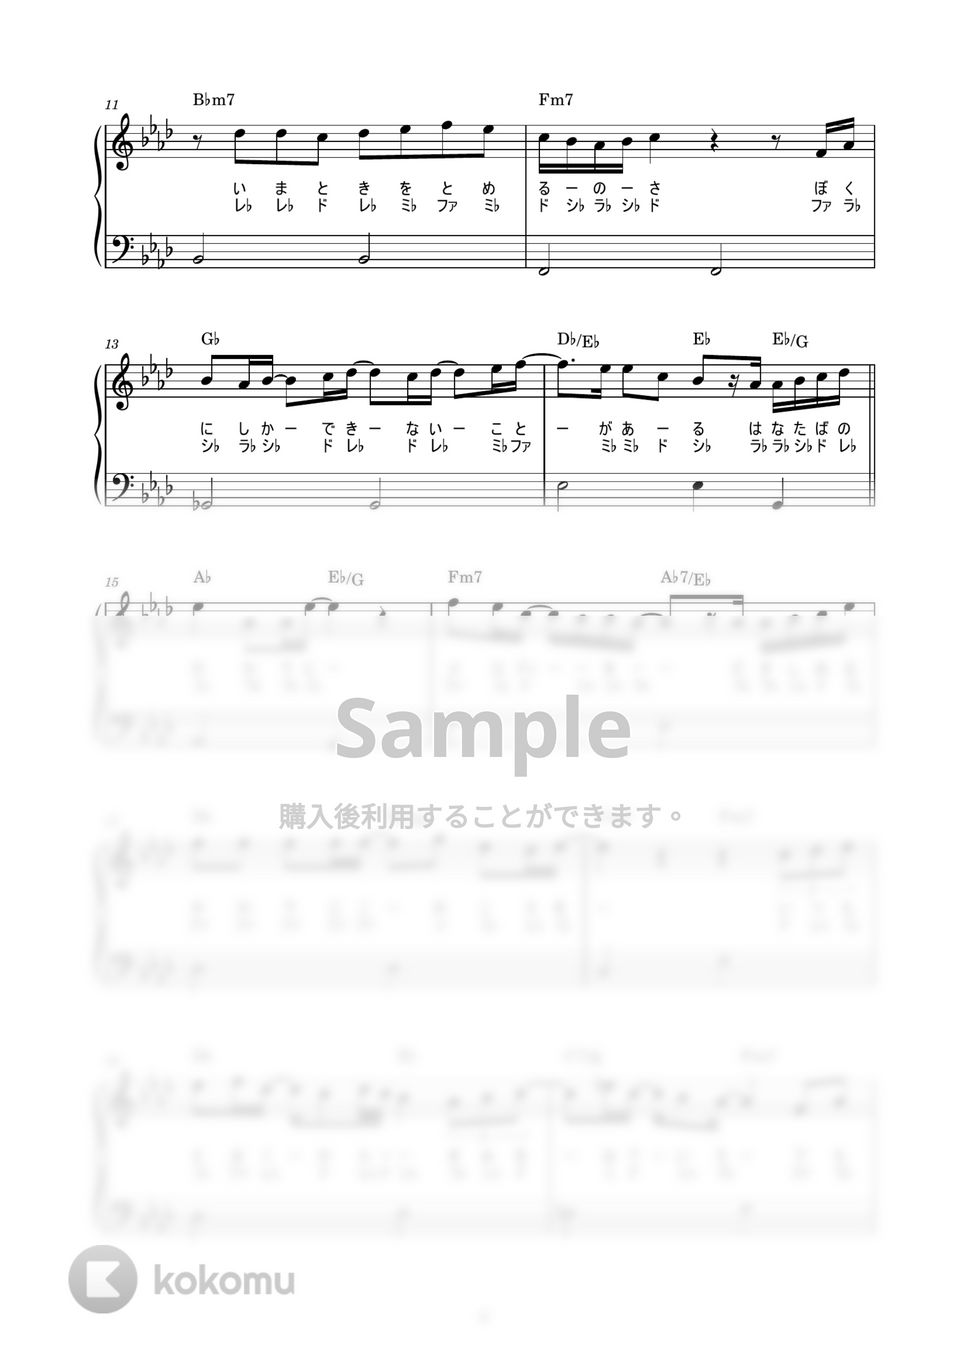 清水翔太 - 花束のかわりにメロディーを (かんたん / 歌詞付き / ドレミ付き / 初心者) by piano.tokyo